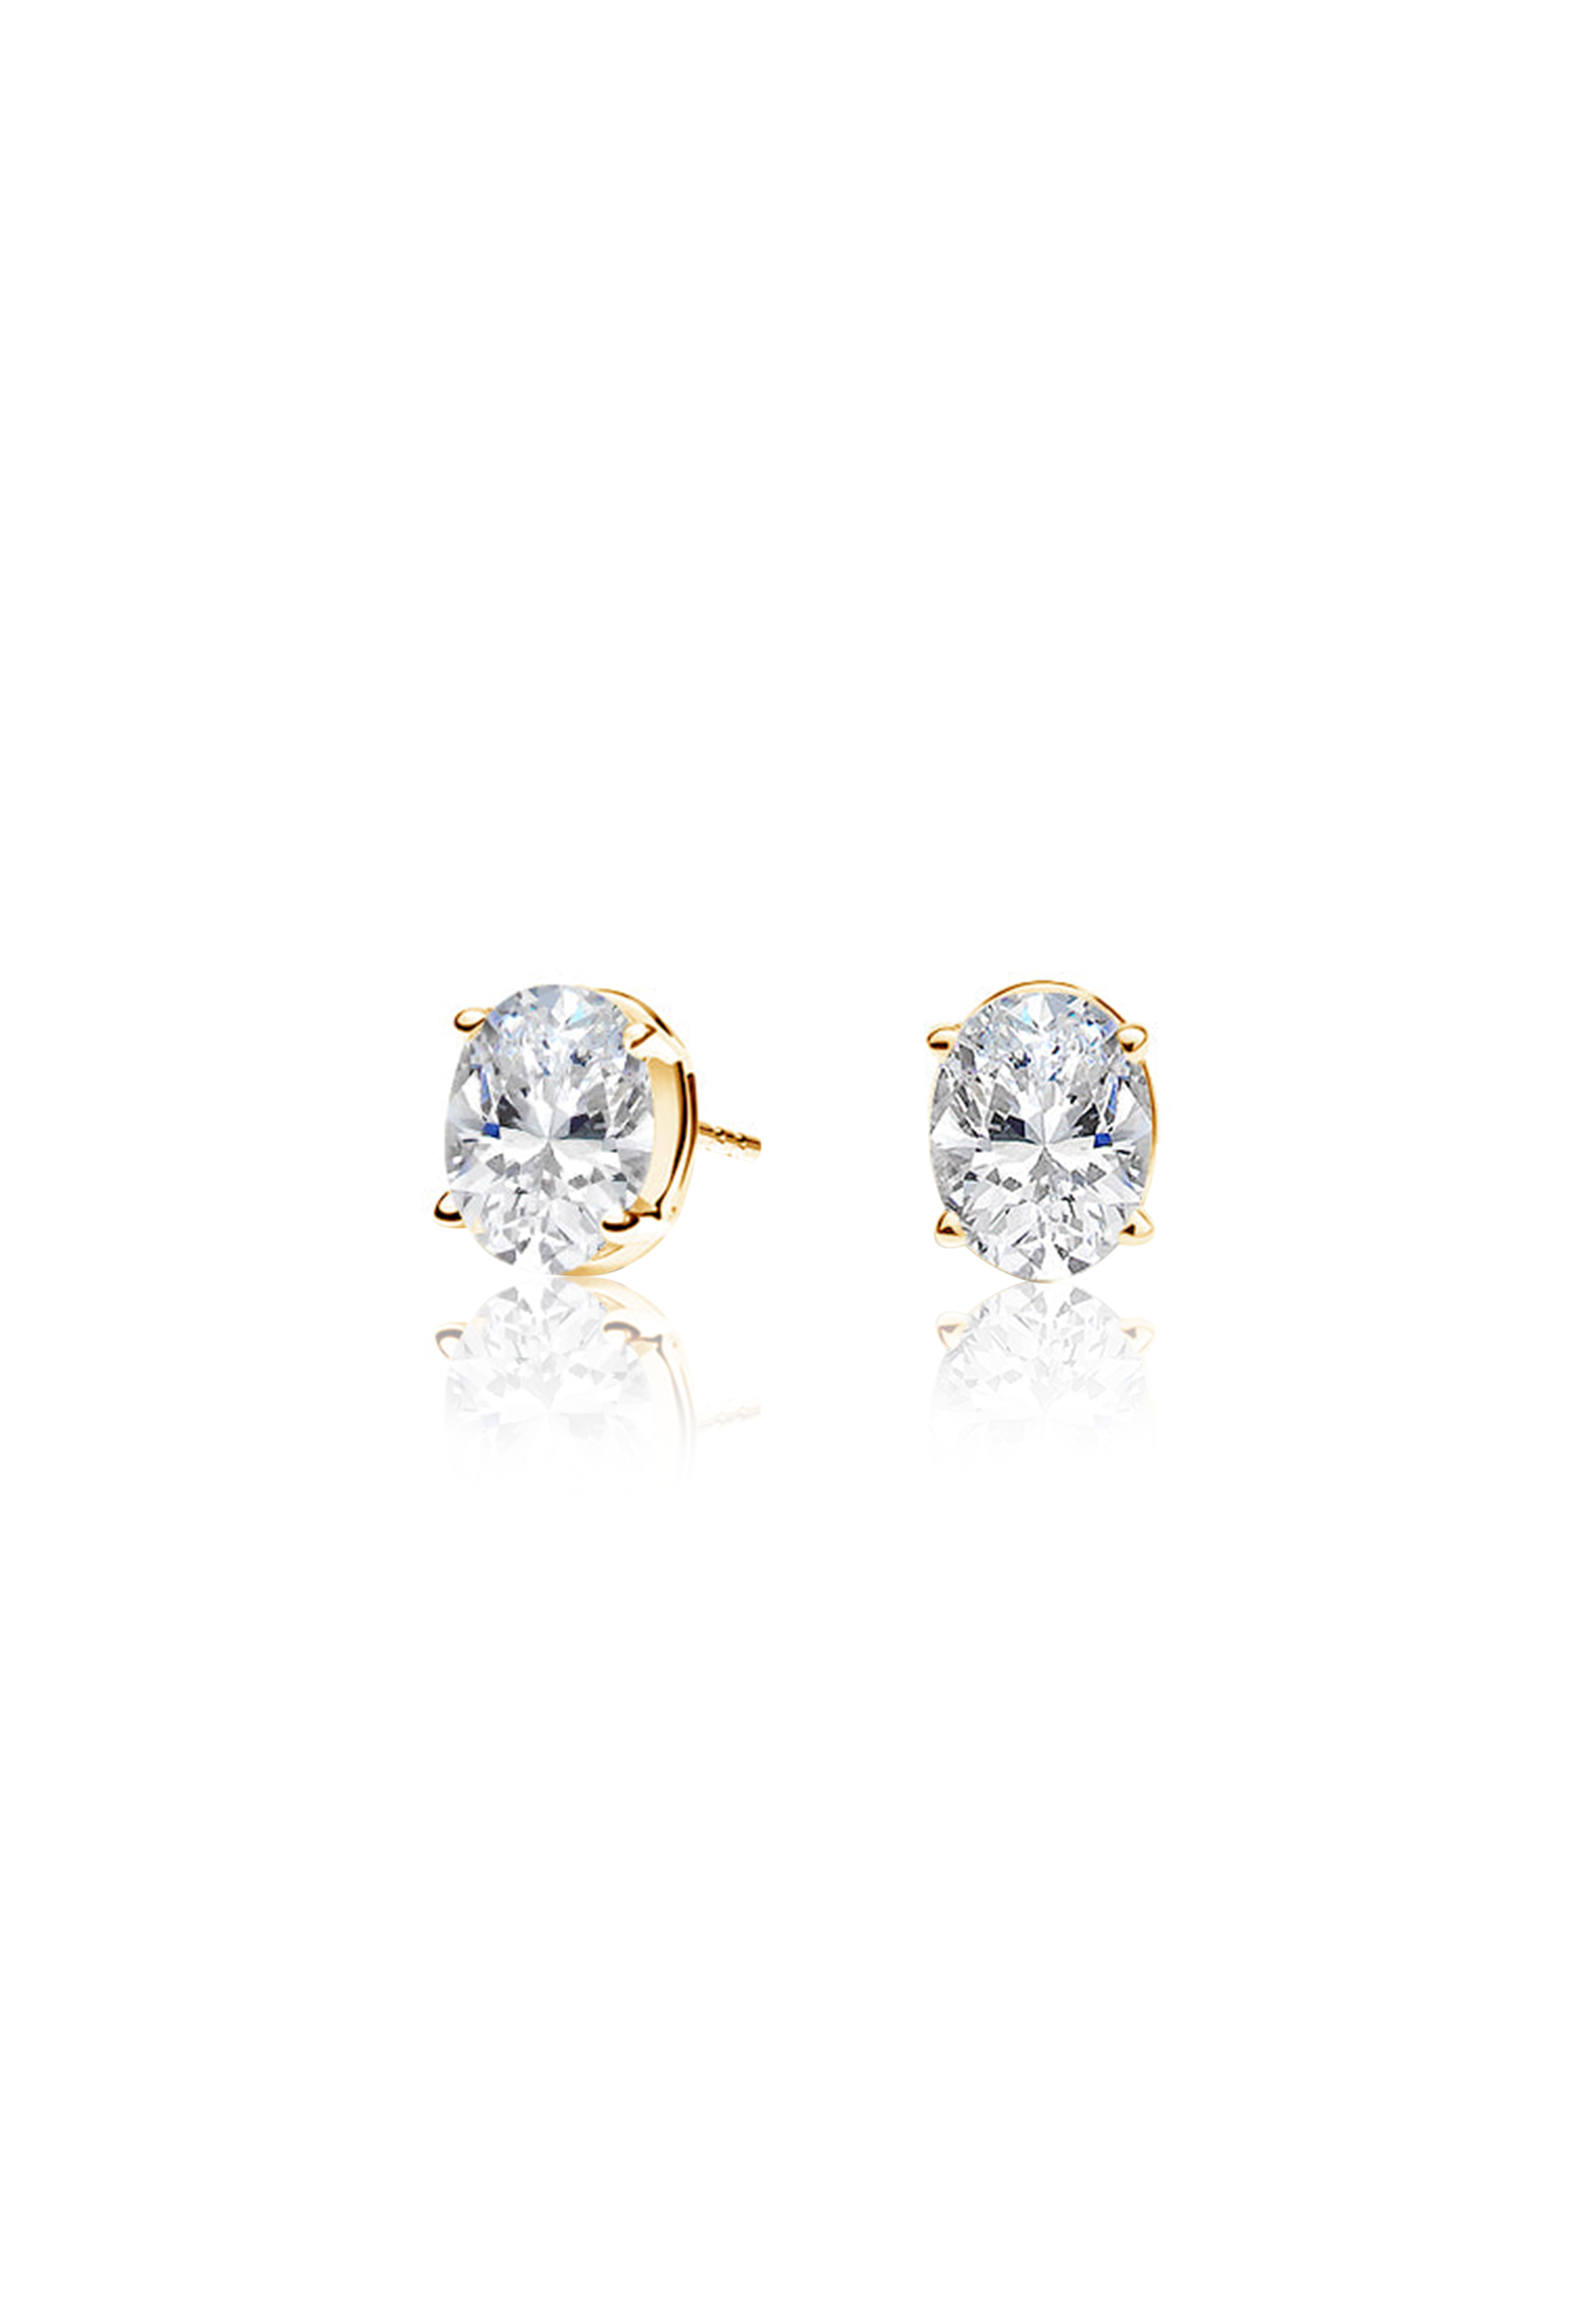 Oval Diamond Earrings 1.0 Carat - Fenom & Co.